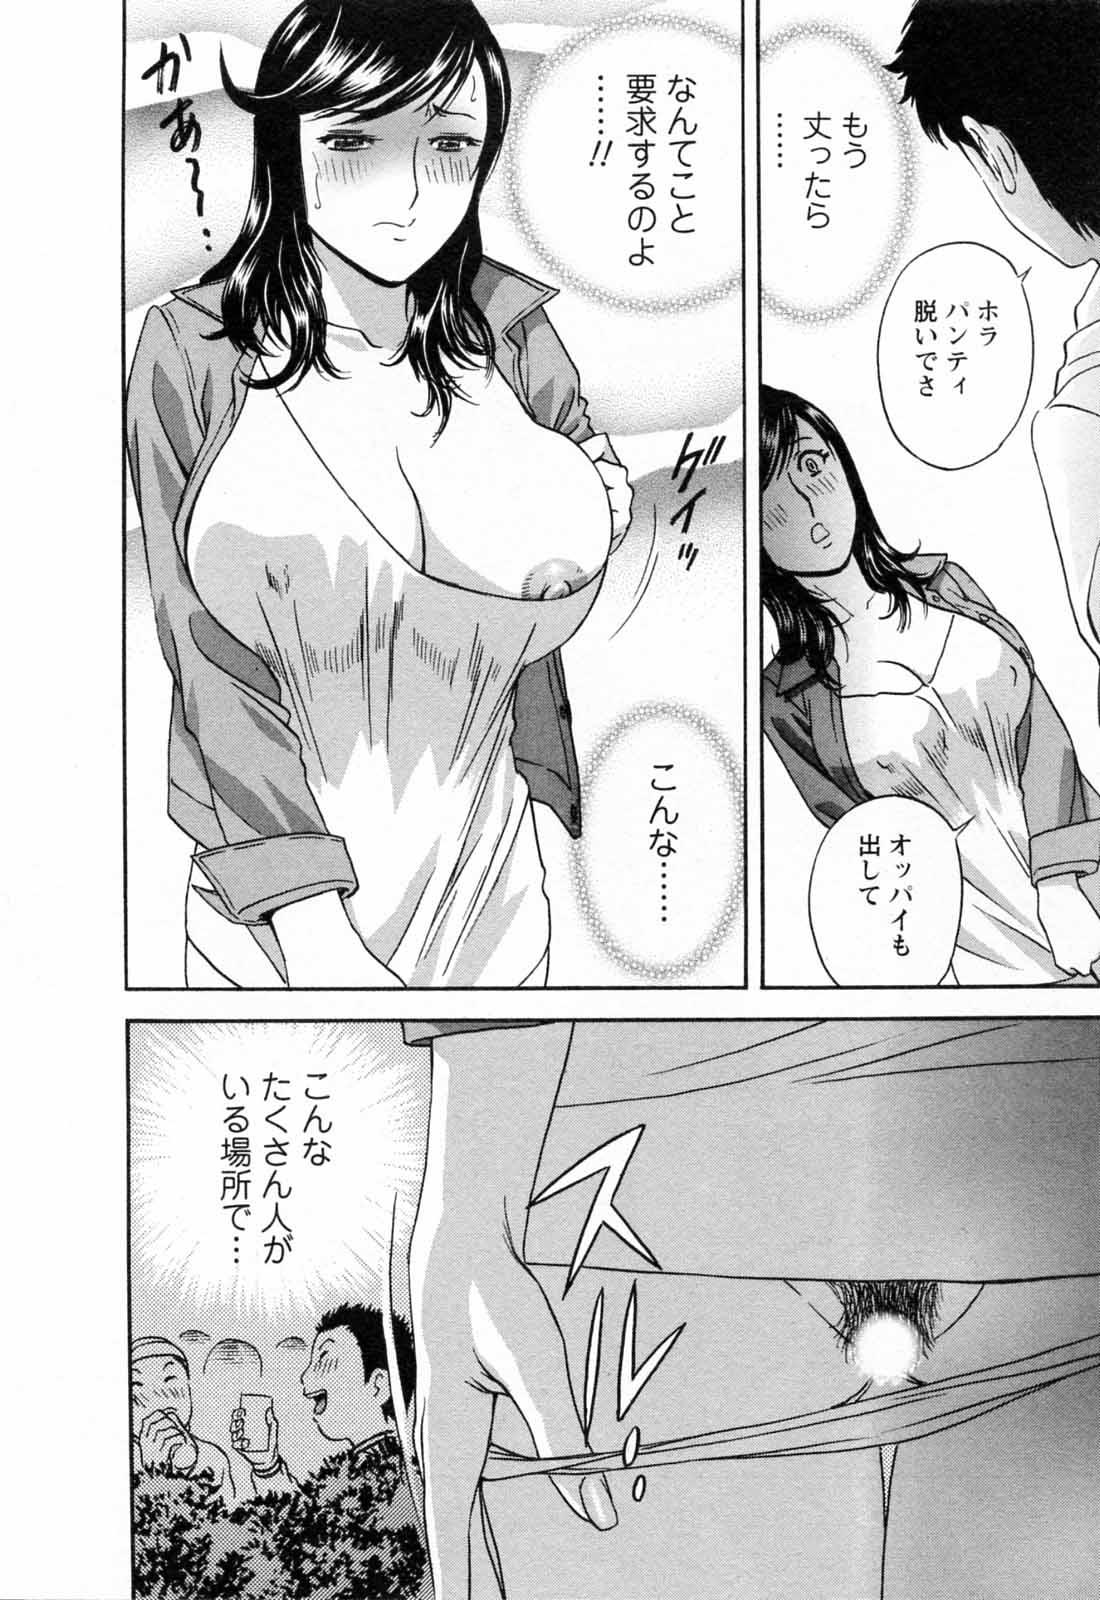 [Hidemaru] Mo-Retsu! Boin Sensei (Boing Boing Teacher) Vol.5 63